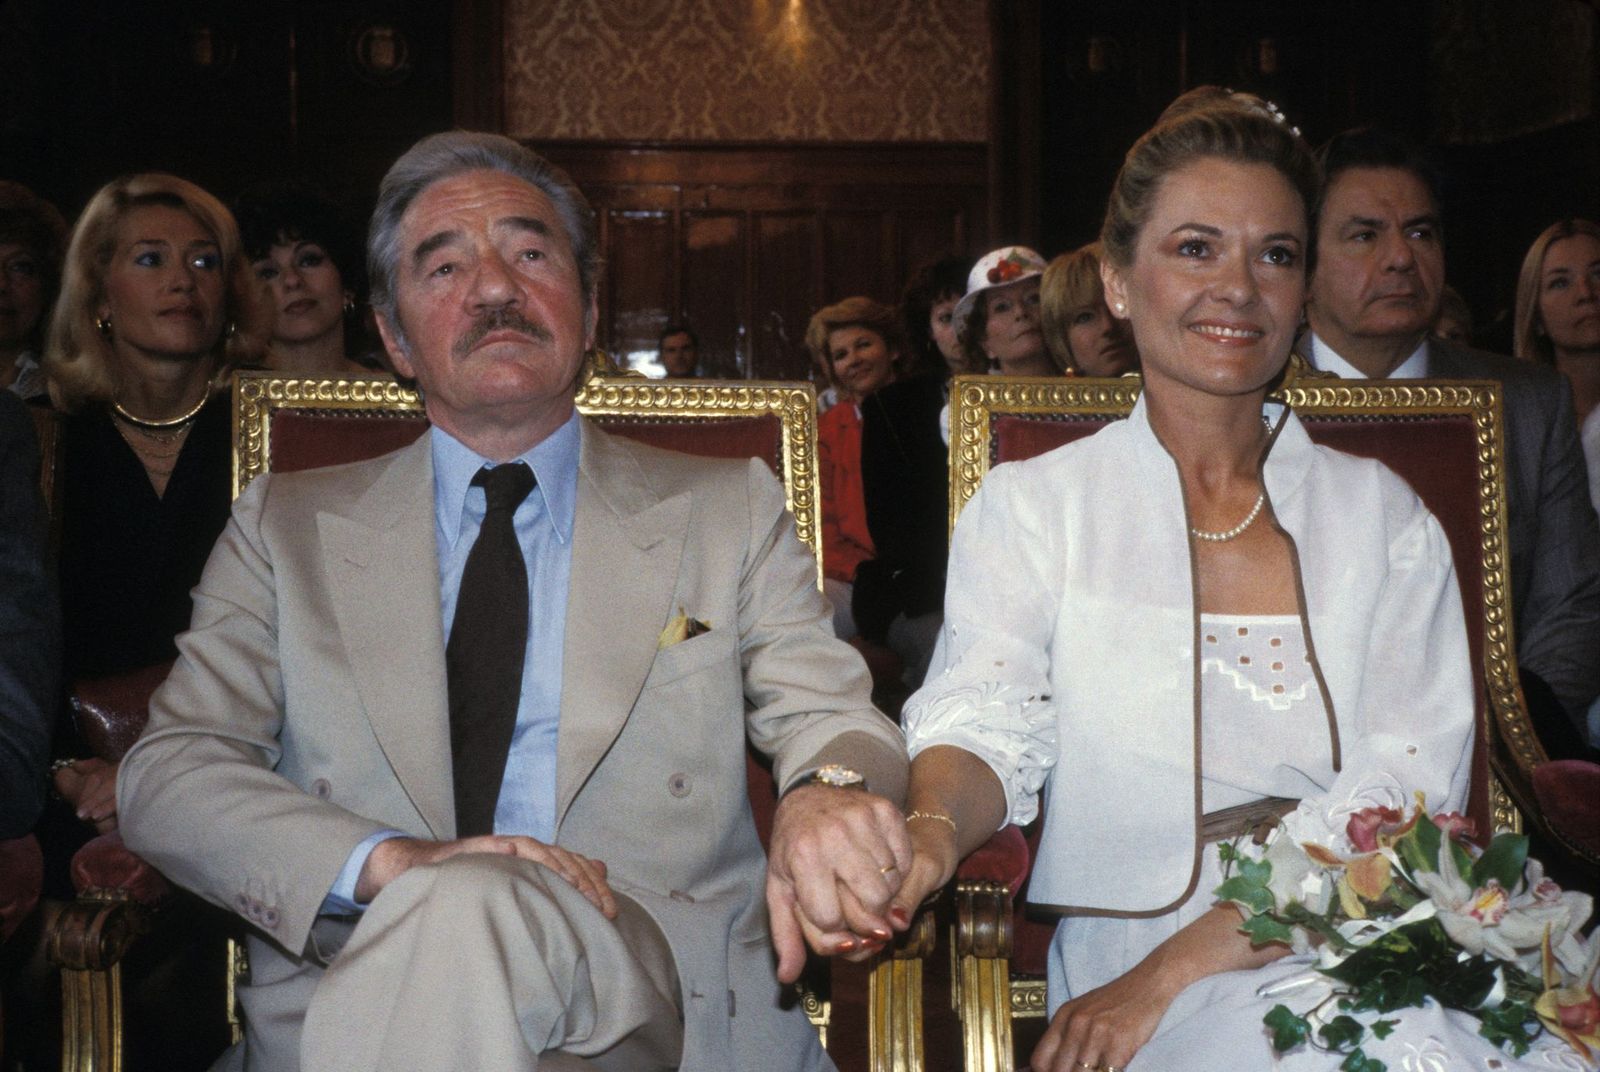 Jean-Pierre Darras et son épouse Corinne Lahaye | Photo : Getty Images.